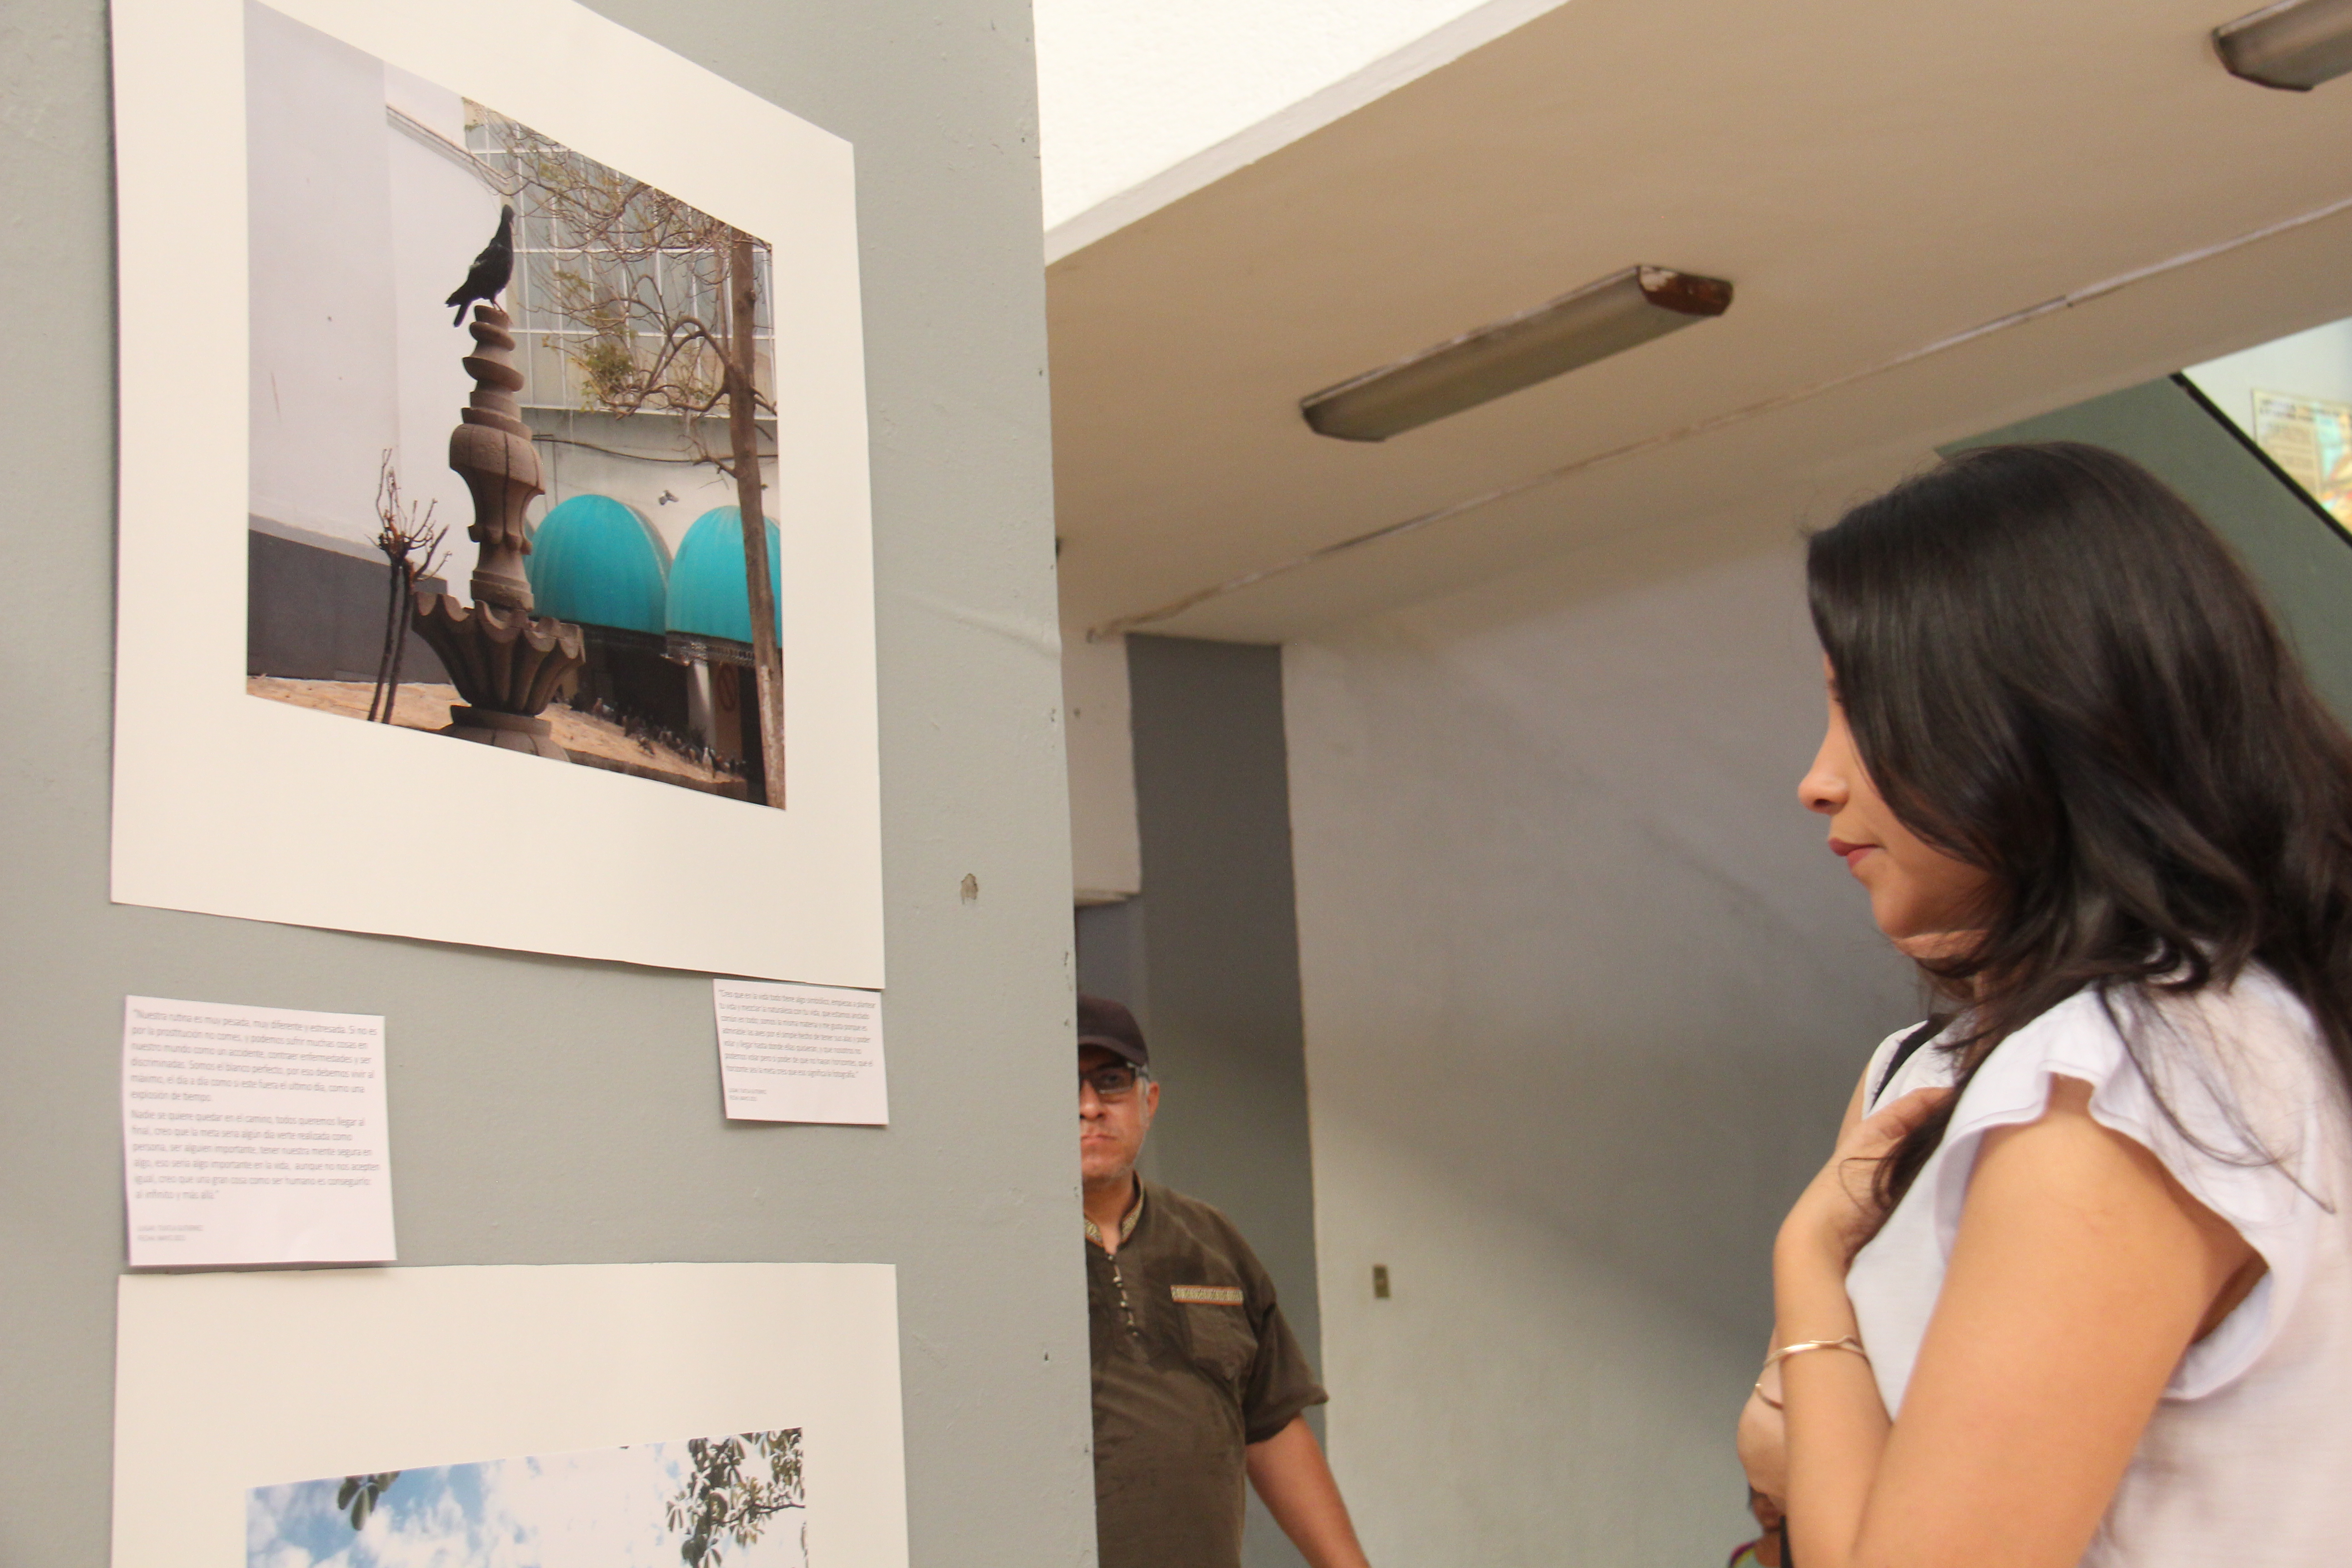 Exposición fotográfica “Movilidad, sexualidad, fronteras” en Tapachula